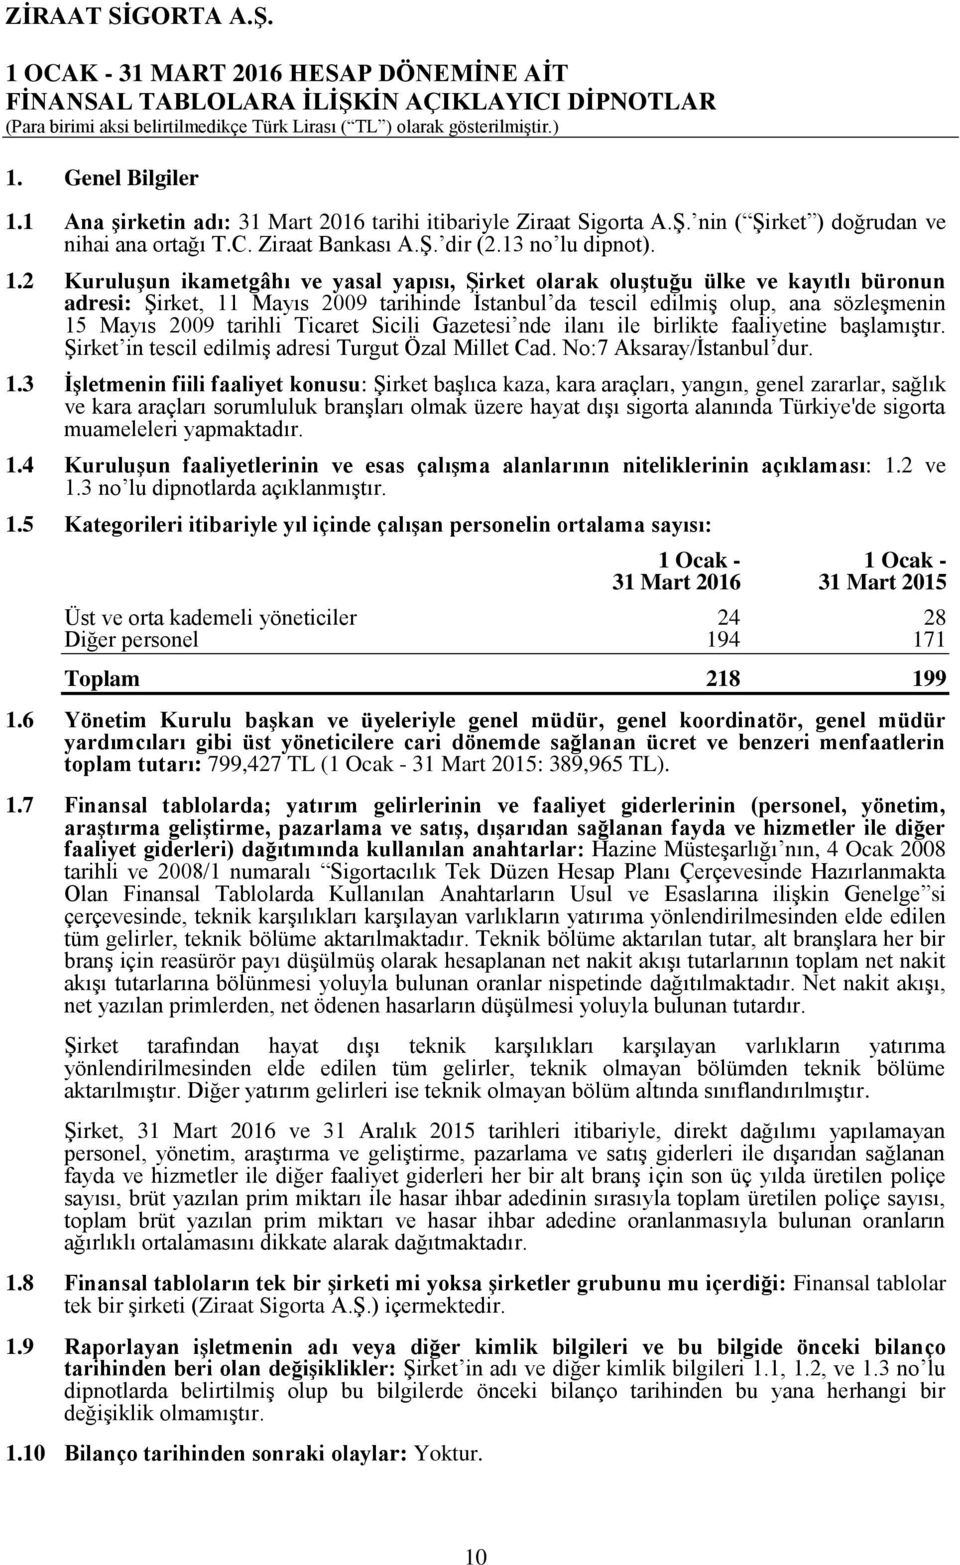 2 Kuruluşun ikametgâhı ve yasal yapısı, Şirket olarak oluştuğu ülke ve kayıtlı büronun adresi: Şirket, 11 Mayıs 2009 tarihinde İstanbul da tescil edilmiş olup, ana sözleşmenin 15 Mayıs 2009 tarihli